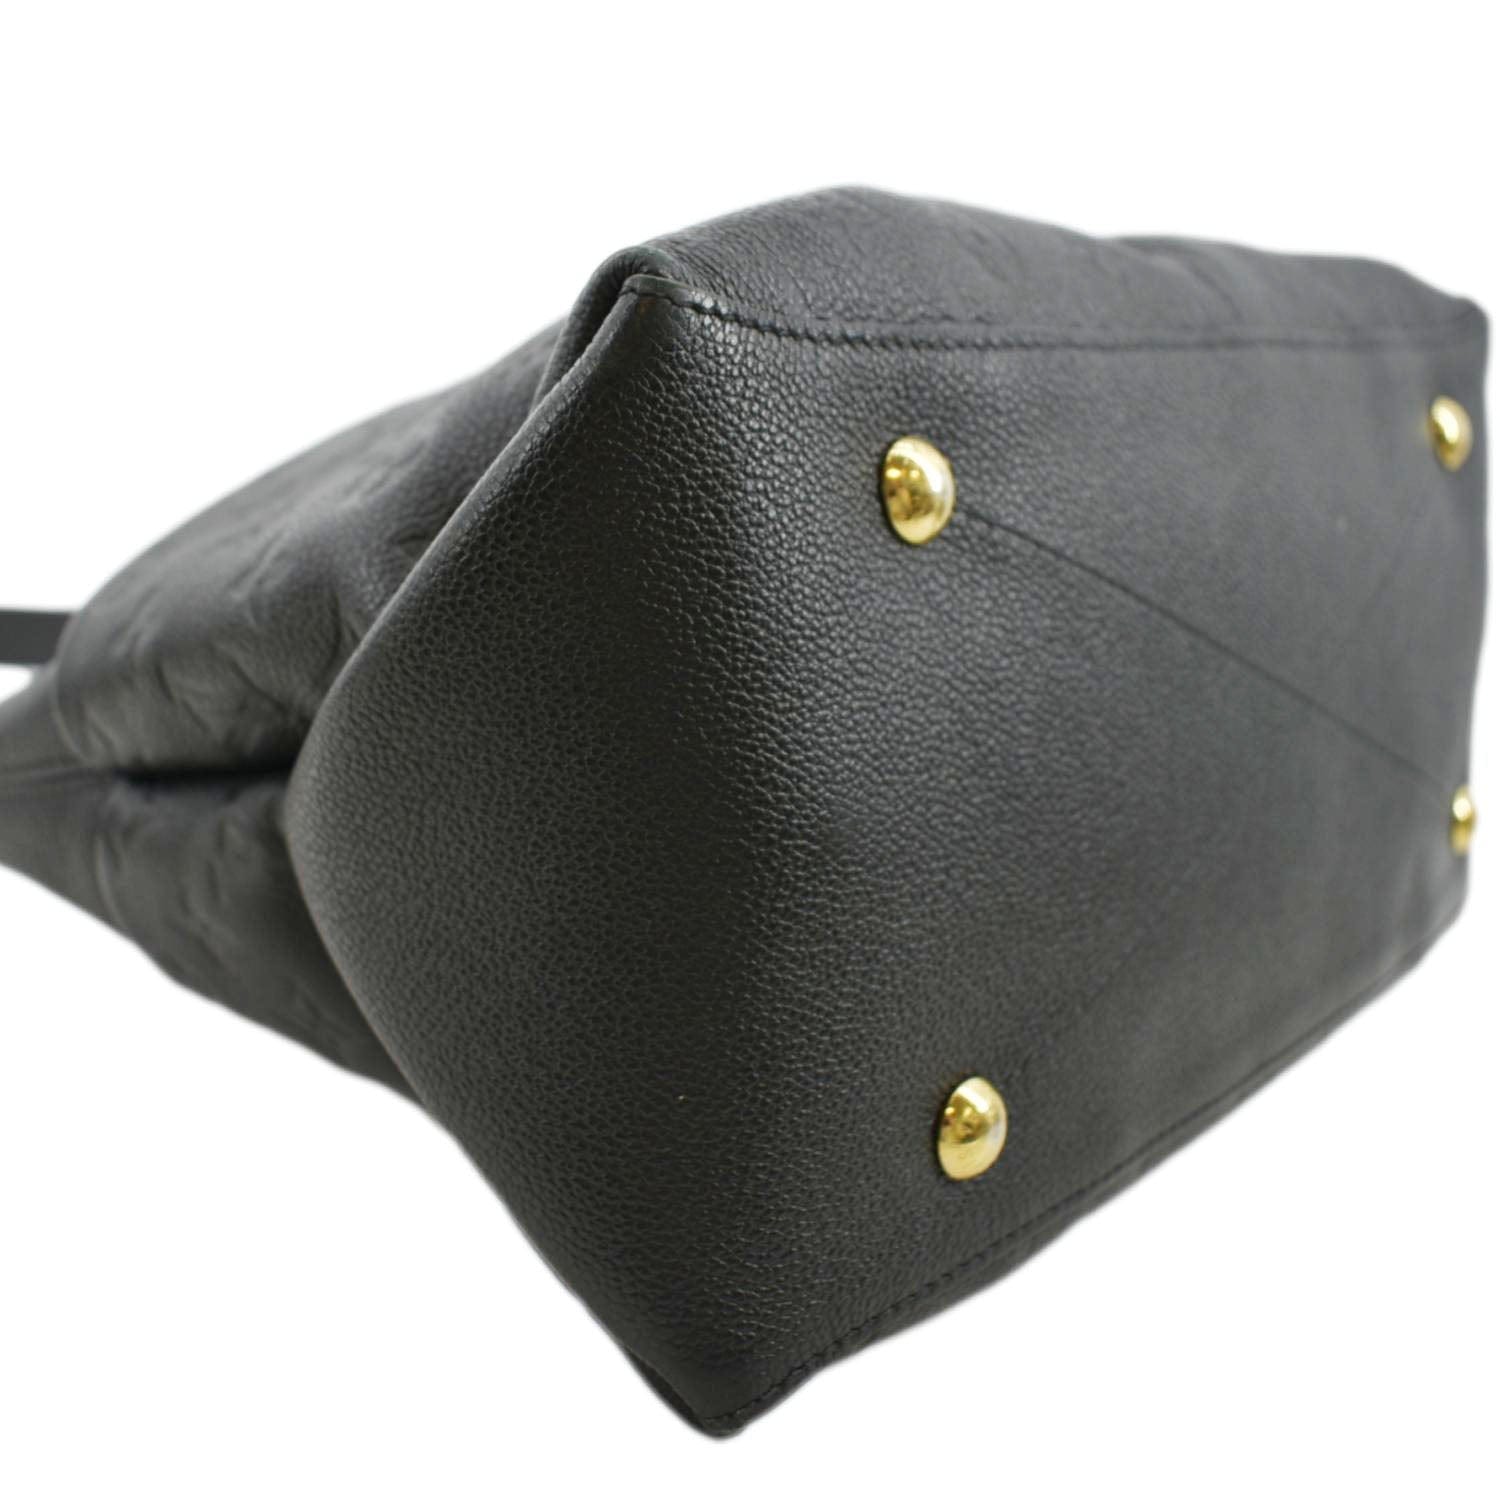 Lv Maida Hobo M45522 Monogram Empreinte leather bag for show! 